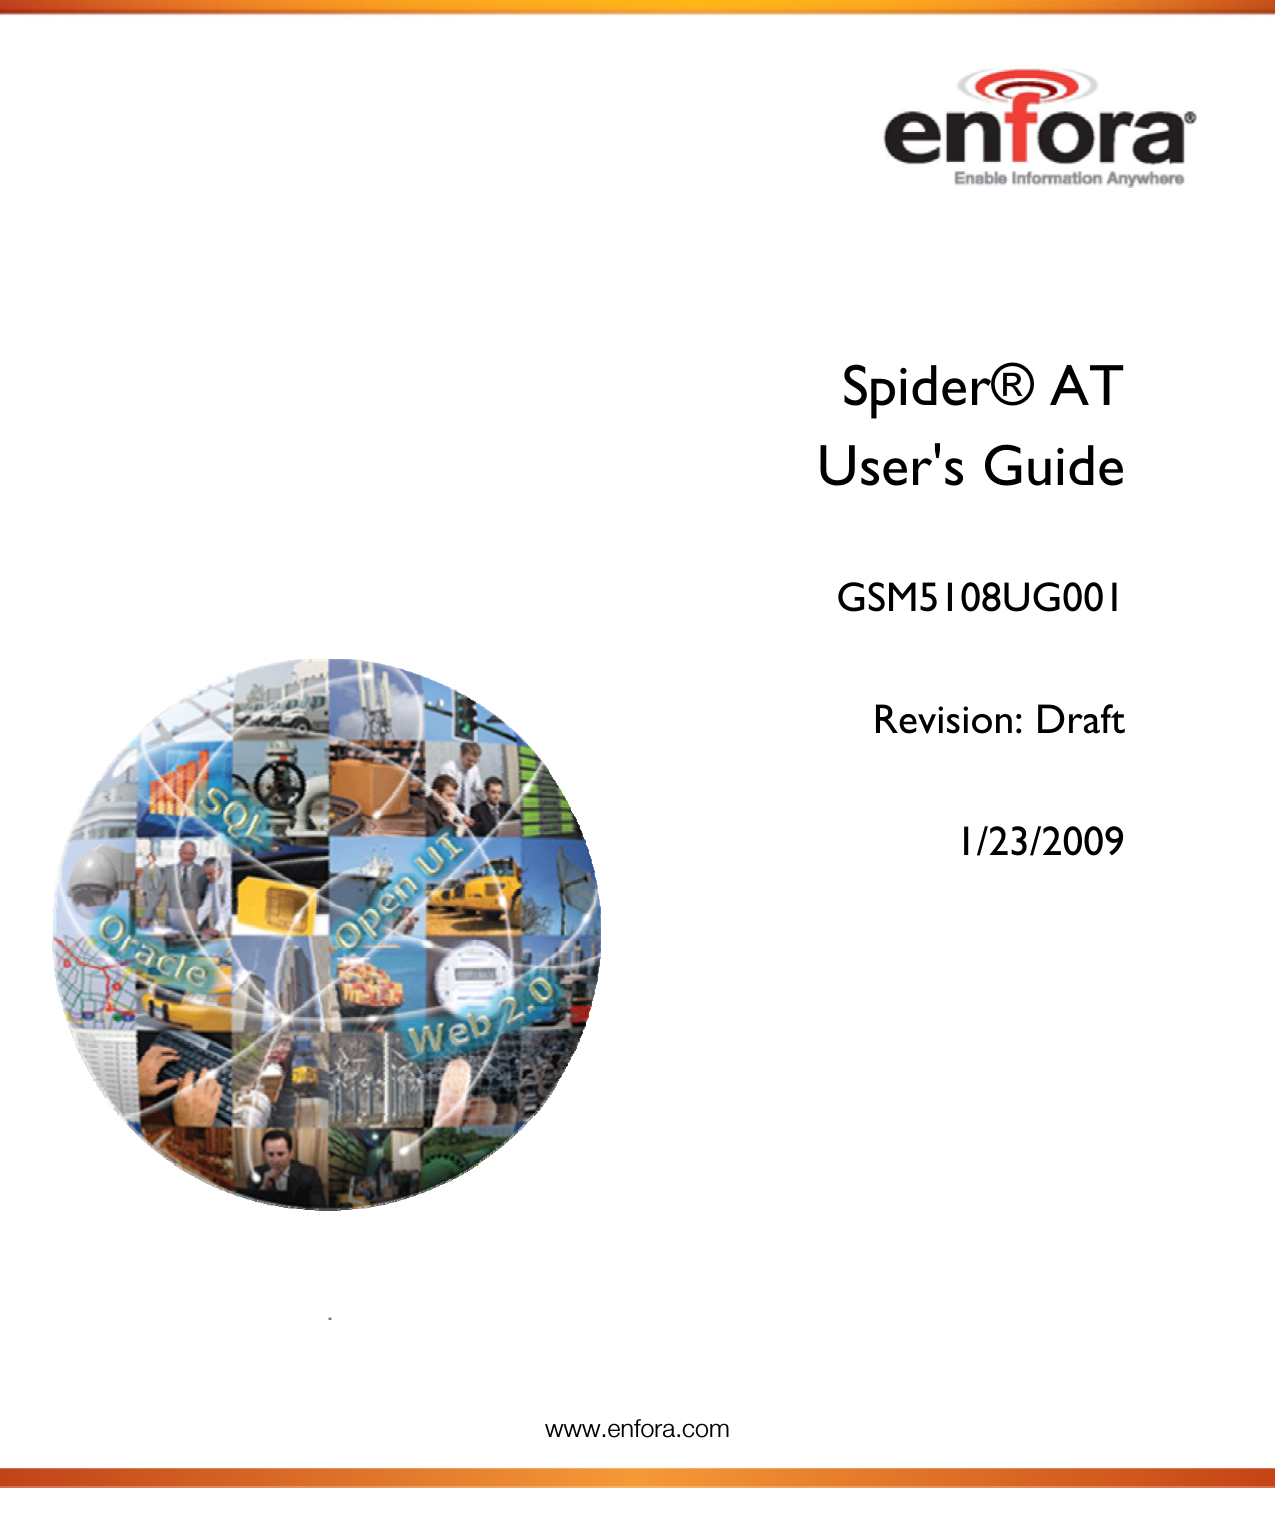  www.enfora.com      Spider® AT User&apos;s Guide  GSM5108UG001  Revision: Draft  1/23/2009     